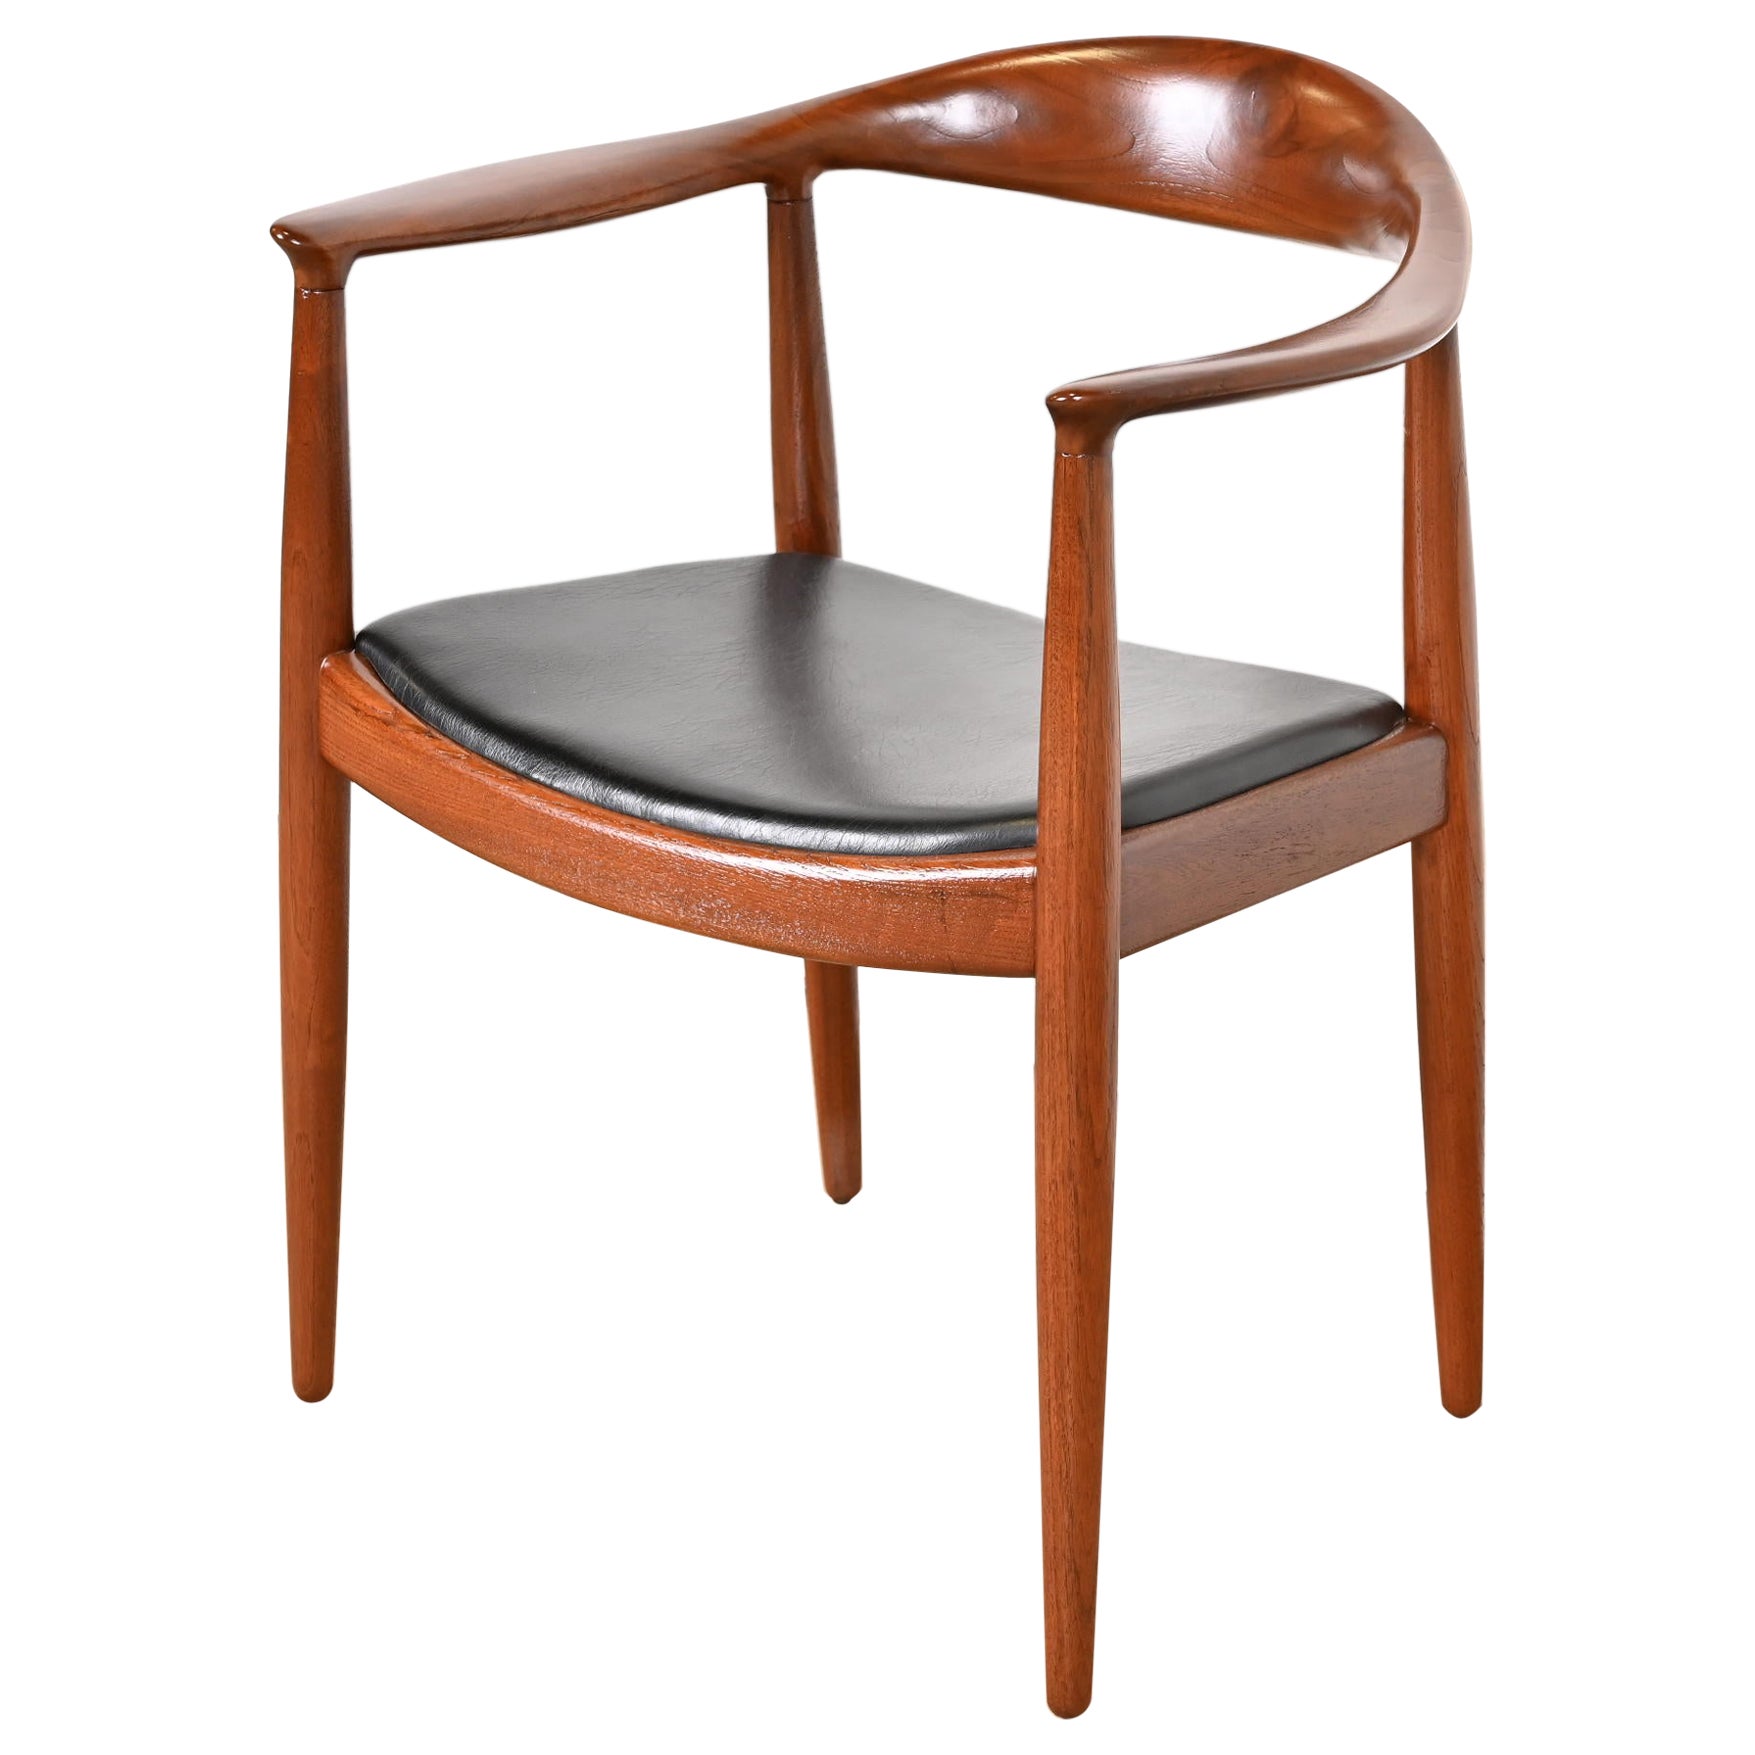 Runder Stuhl „The Chair“ aus Teakholz und Leder, Hans Wegner für Johannes Hansen, 1960er Jahre